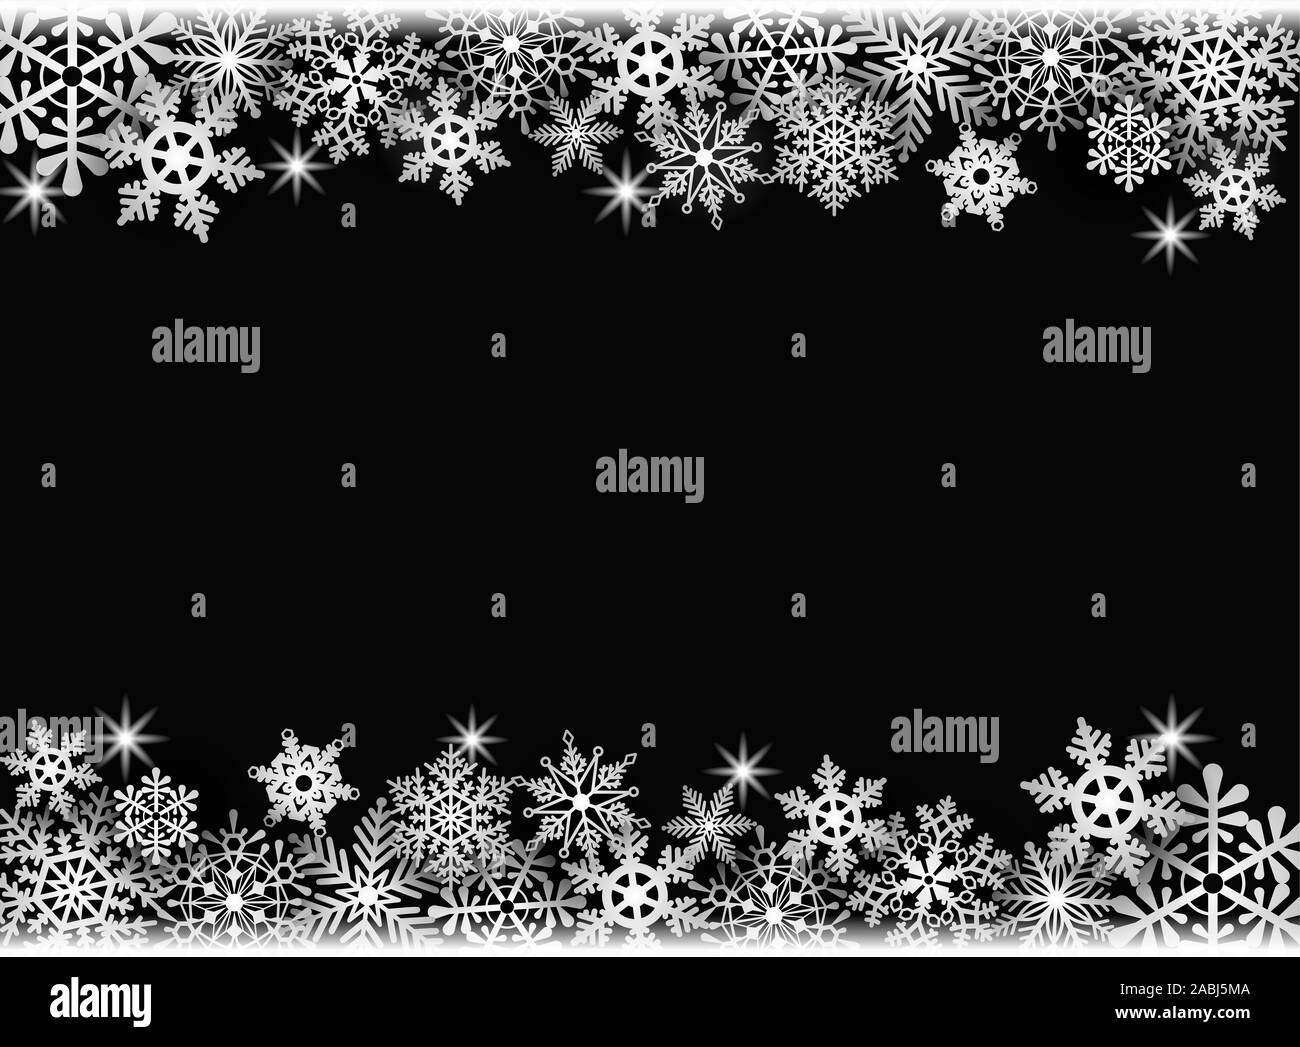 Fond de Noël avec des flocons de neige Banque D'Images